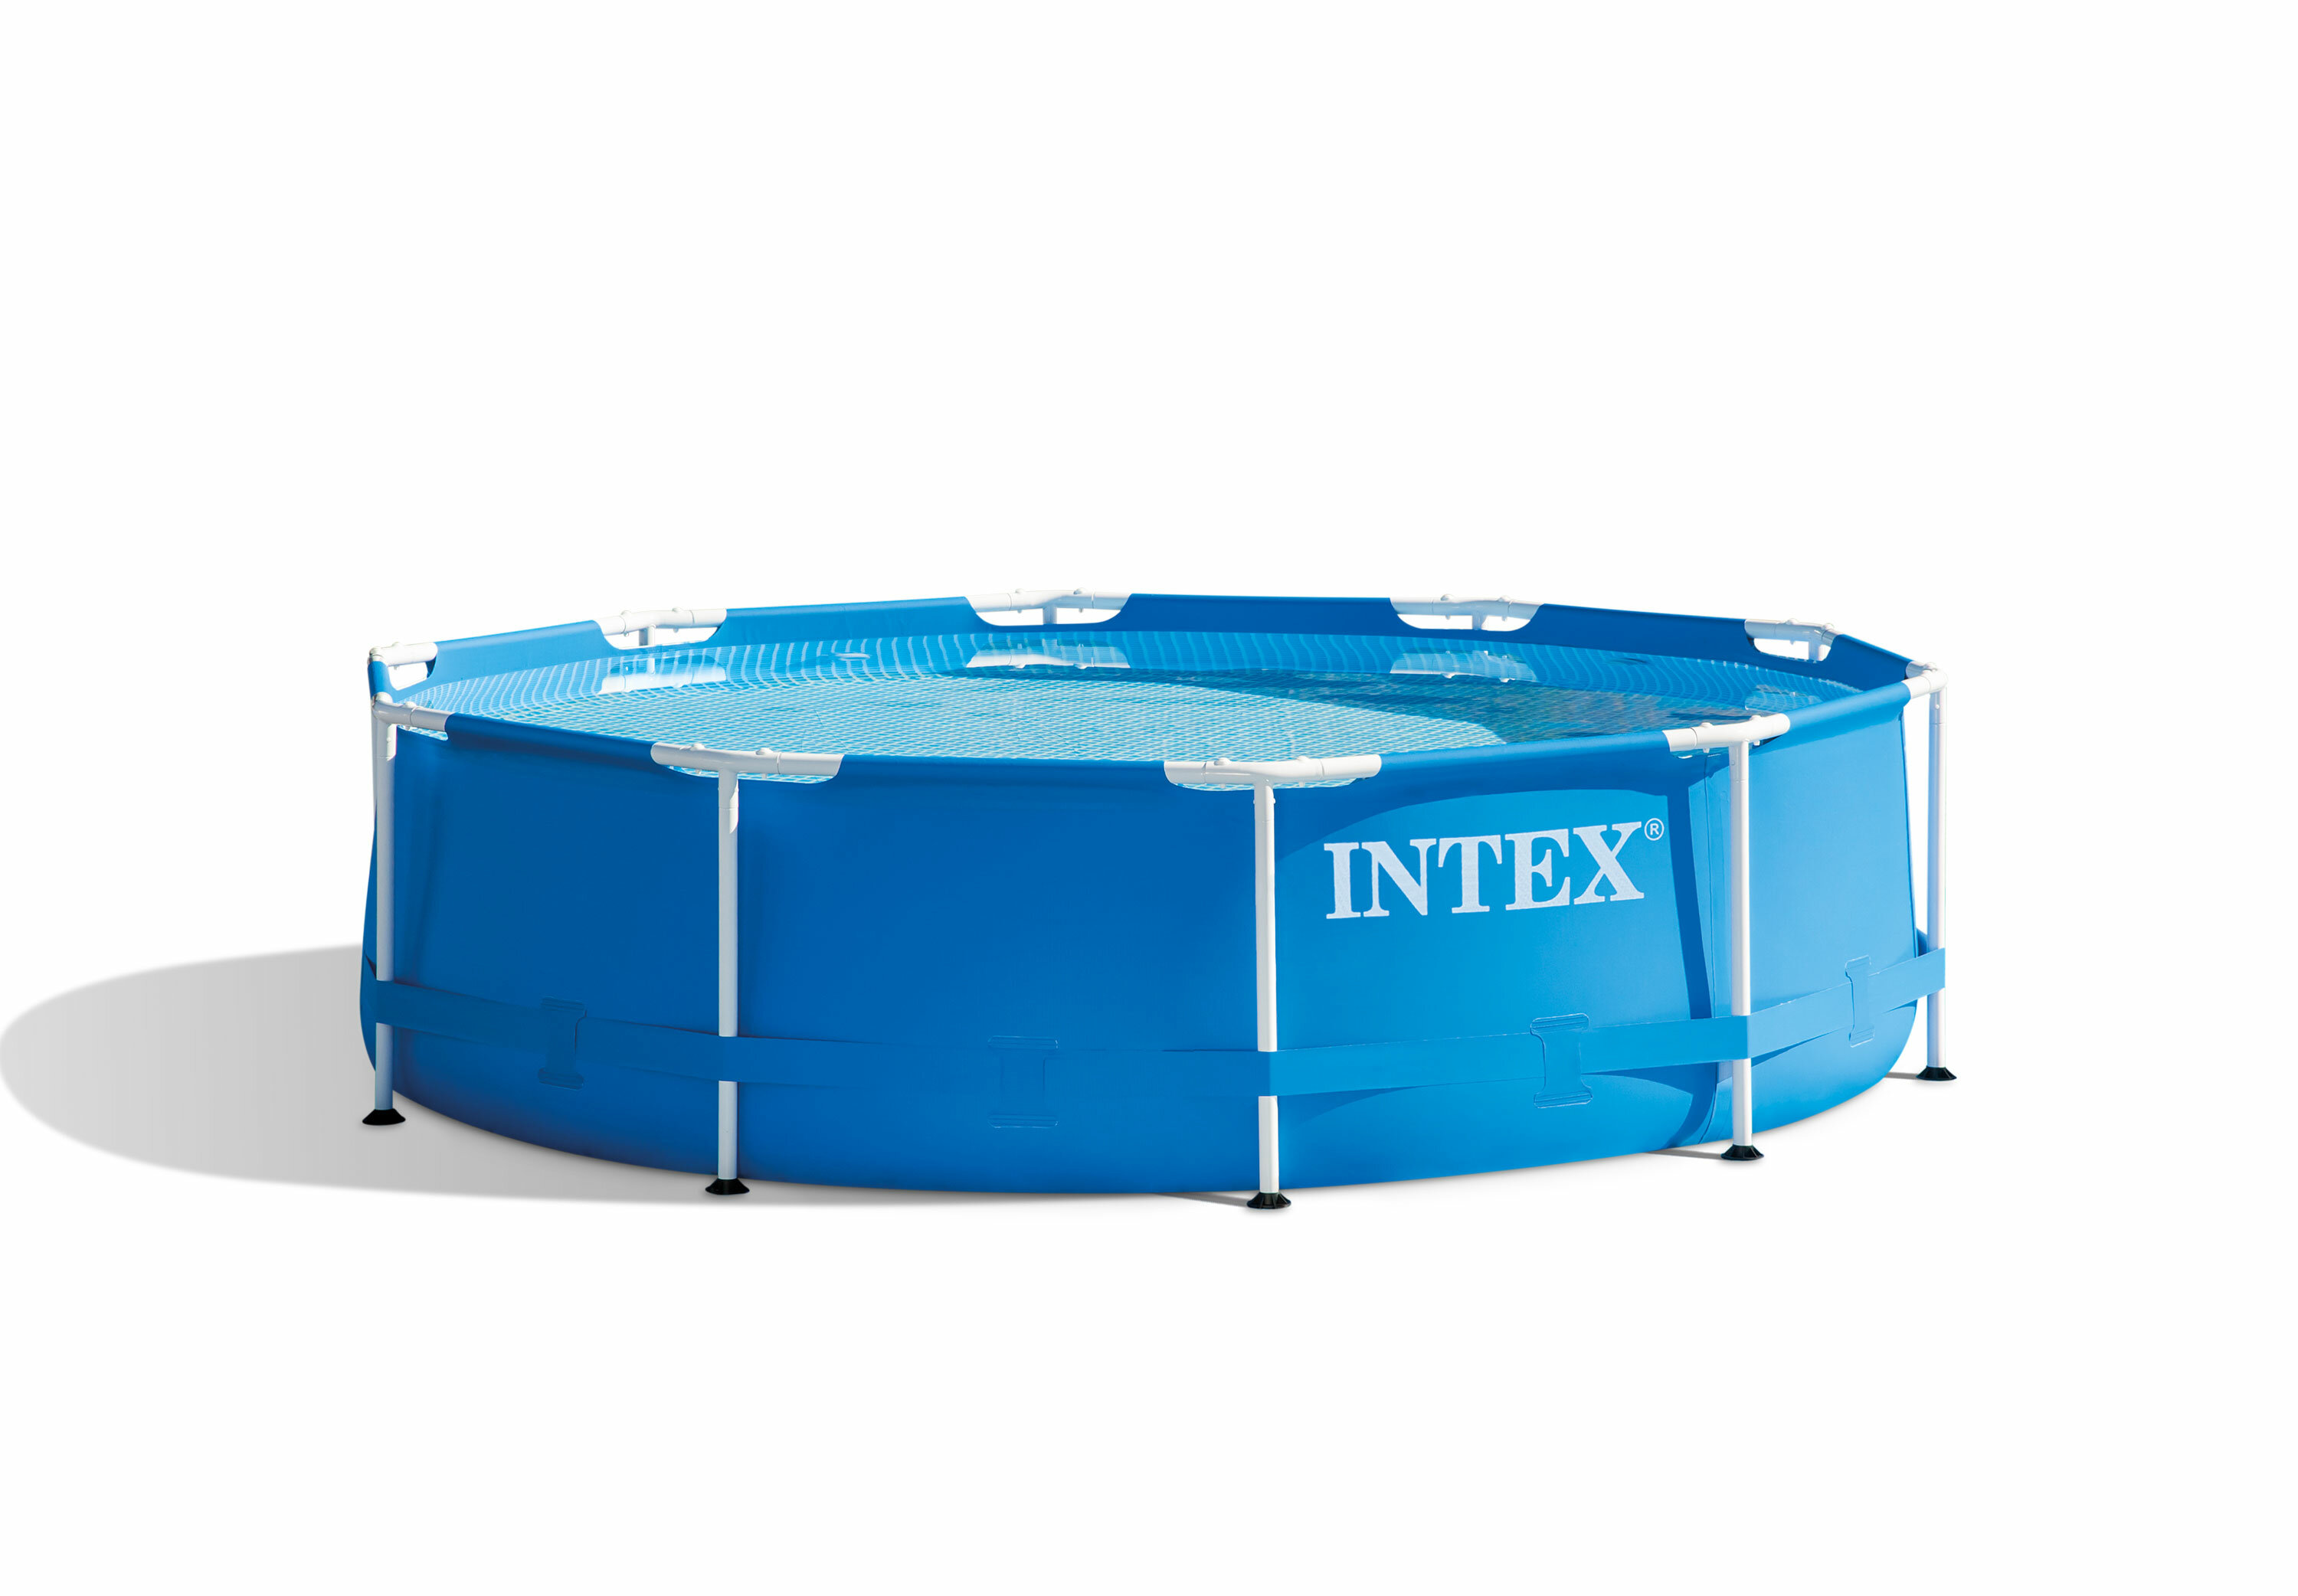 INTEX 28242 Каркасный бассейн Metal Frame 457х122см, фильтр-насос, лестница, тент, подстилка